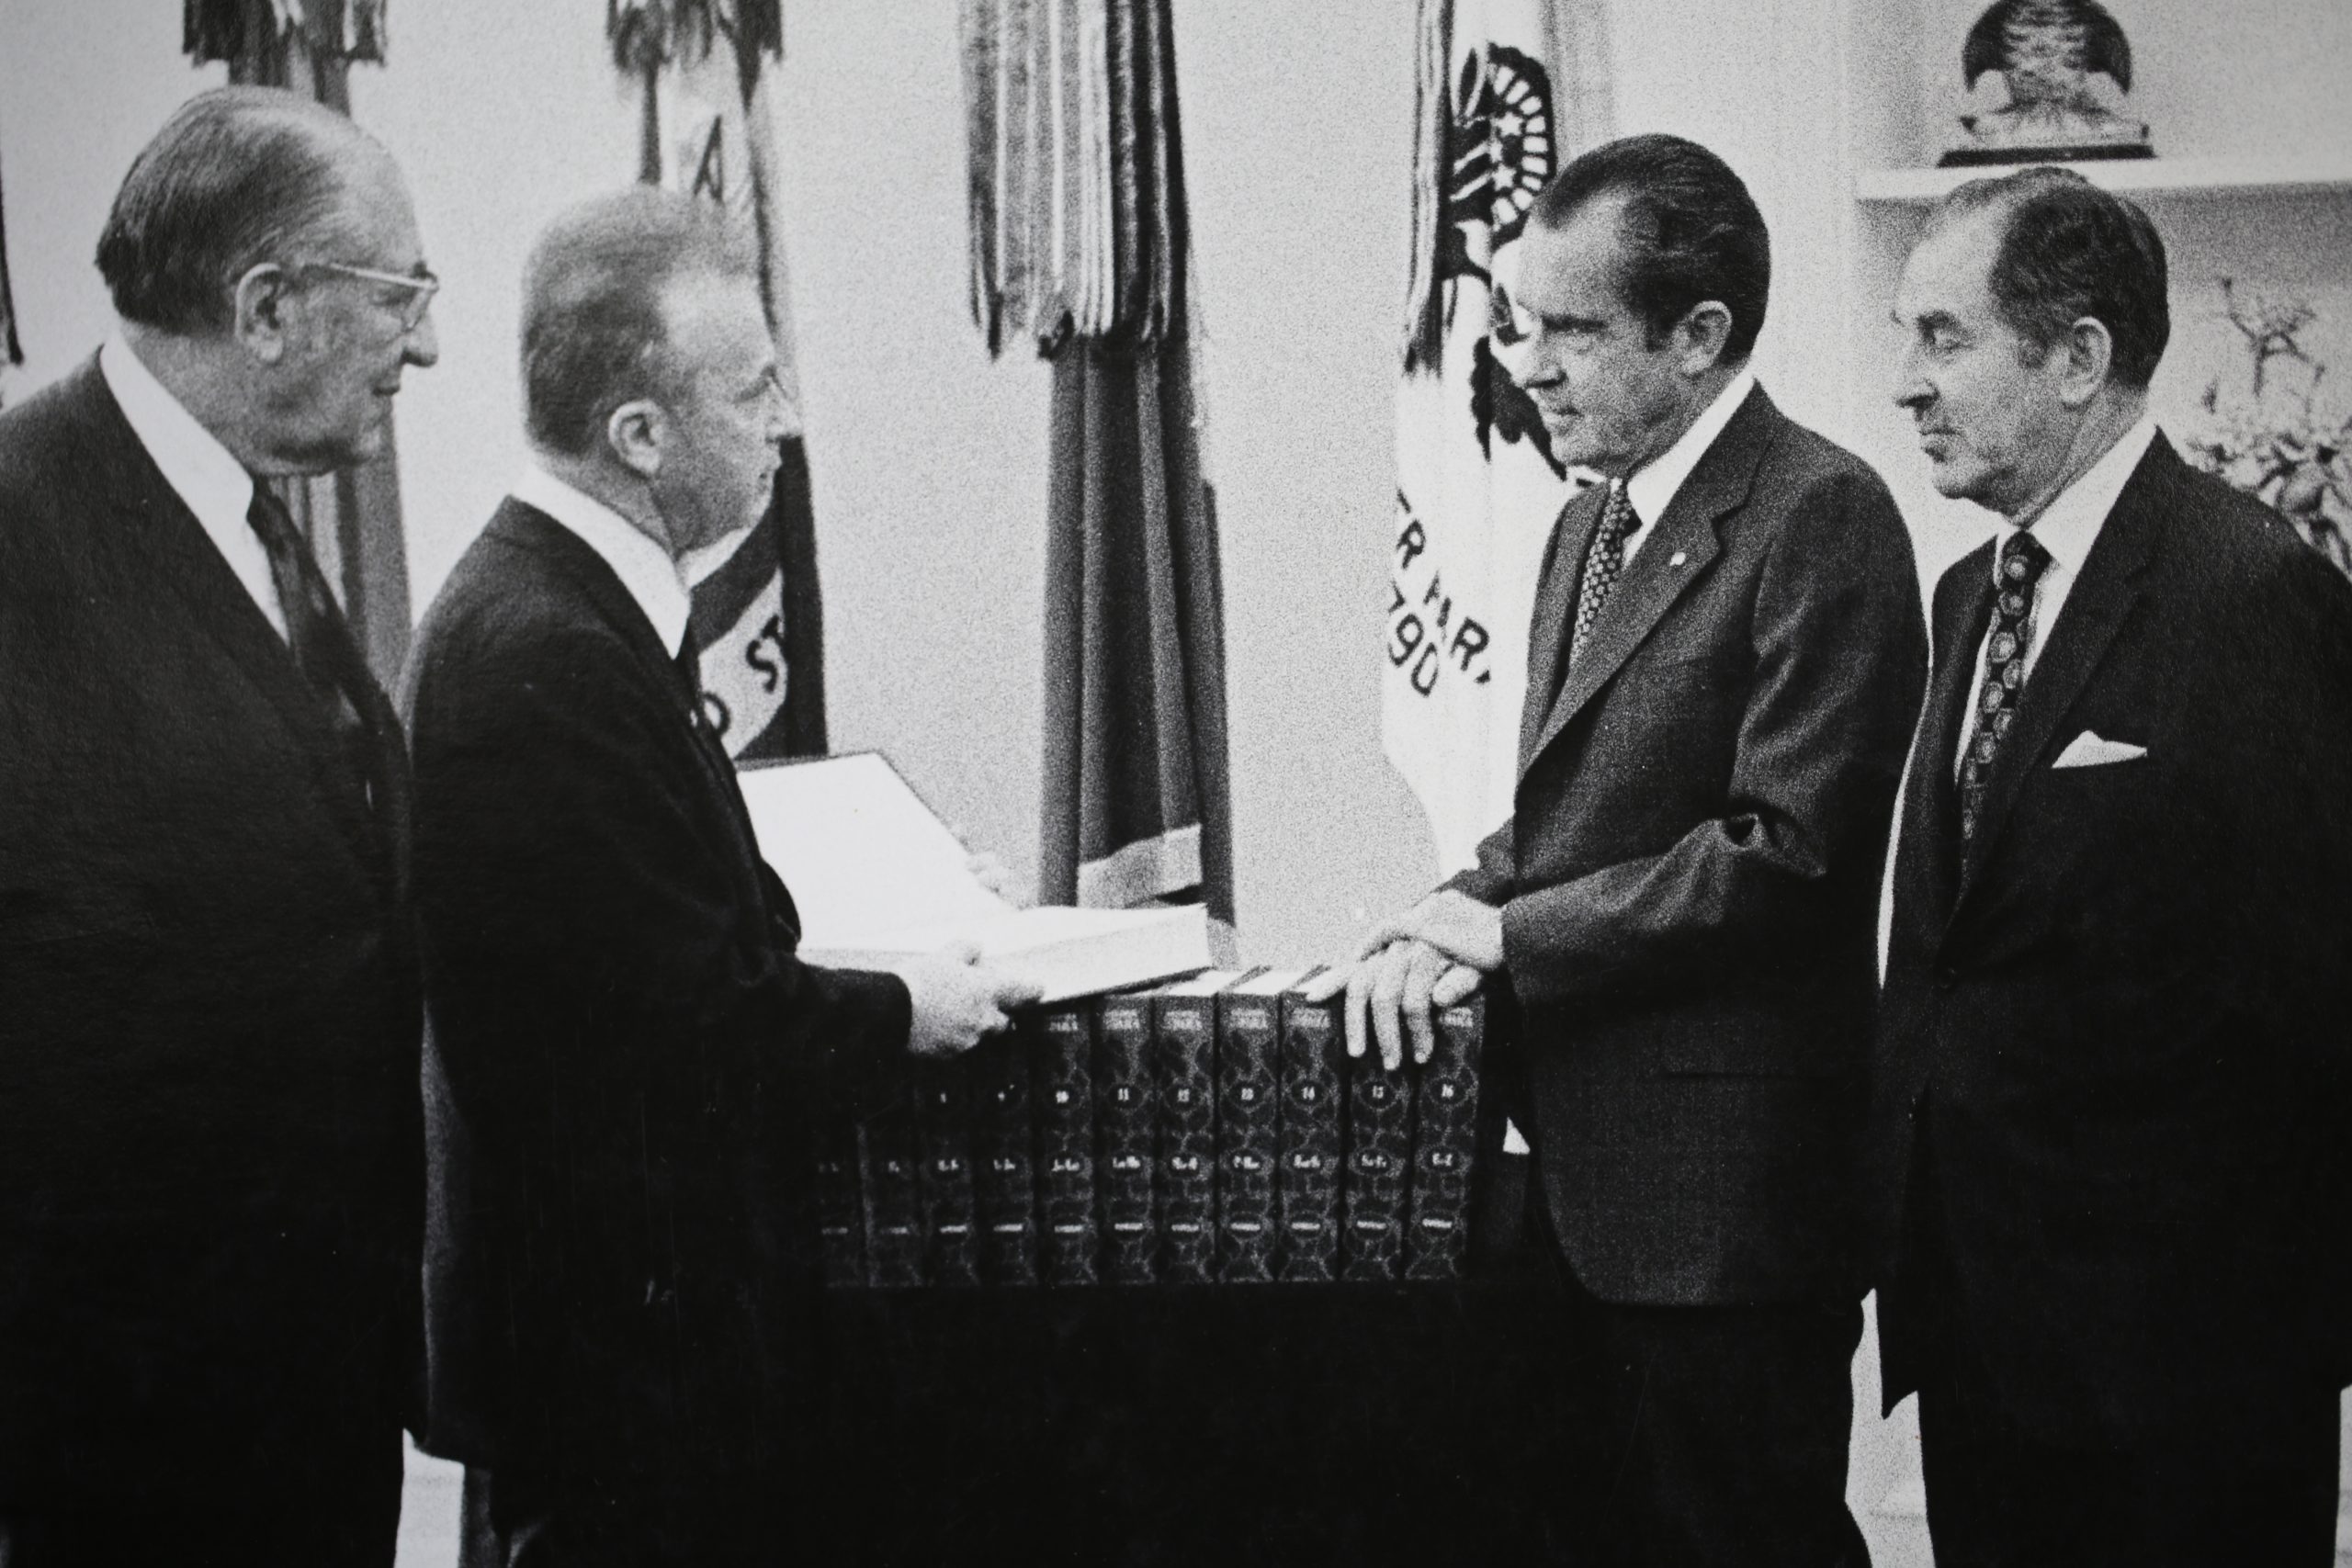 לצד נשיא ארצות הברית ניקסון וראש הממשלה רבין